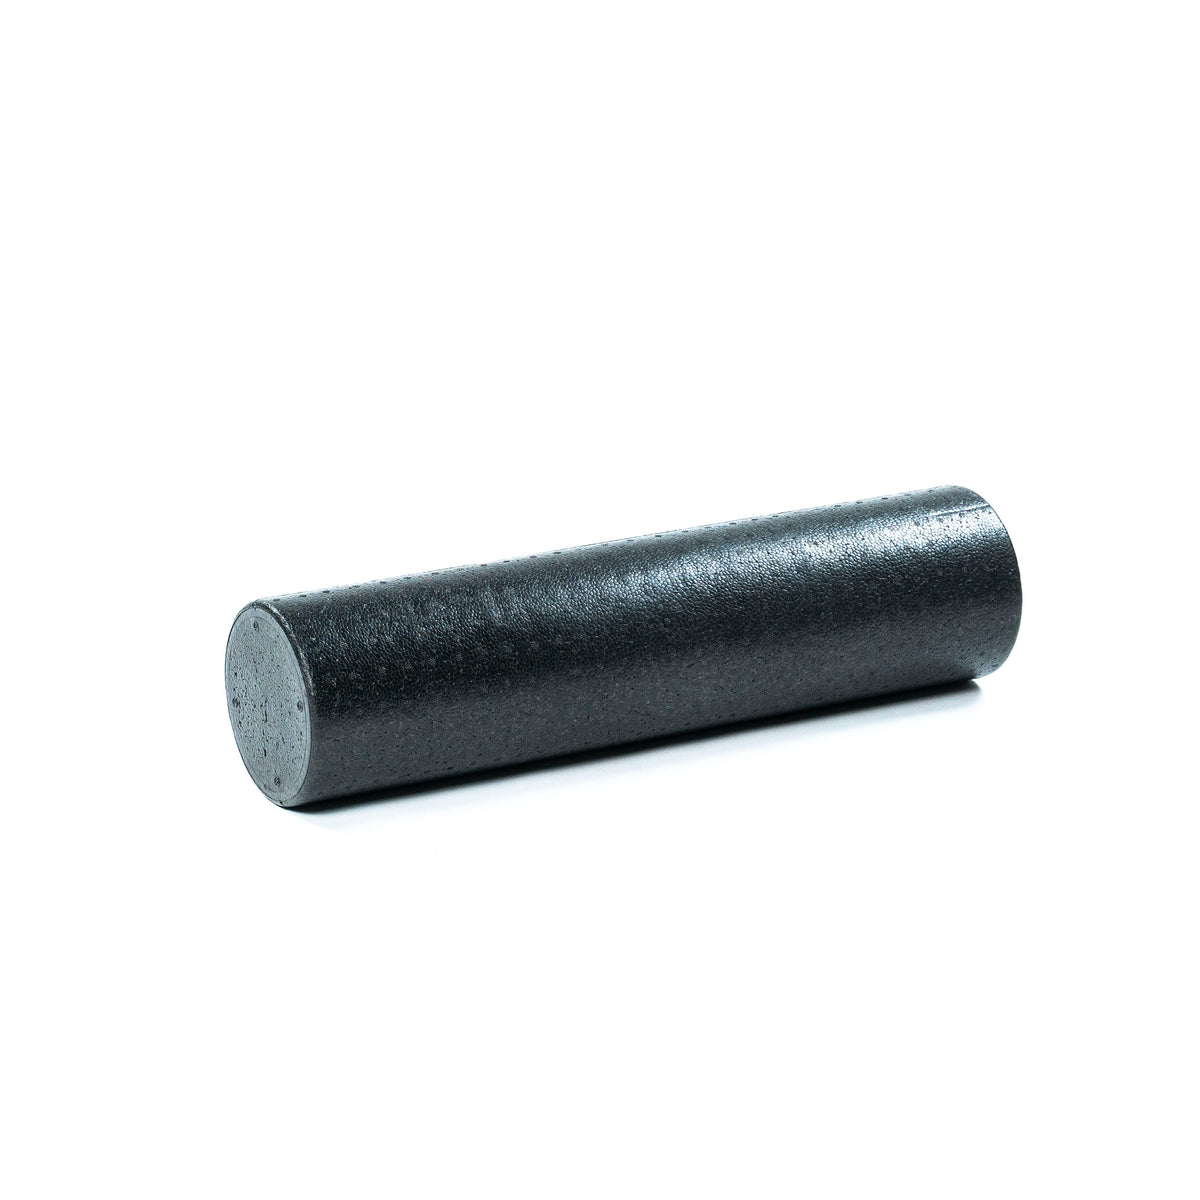 FitWay Equip. Black Foam Roller - 60cm 